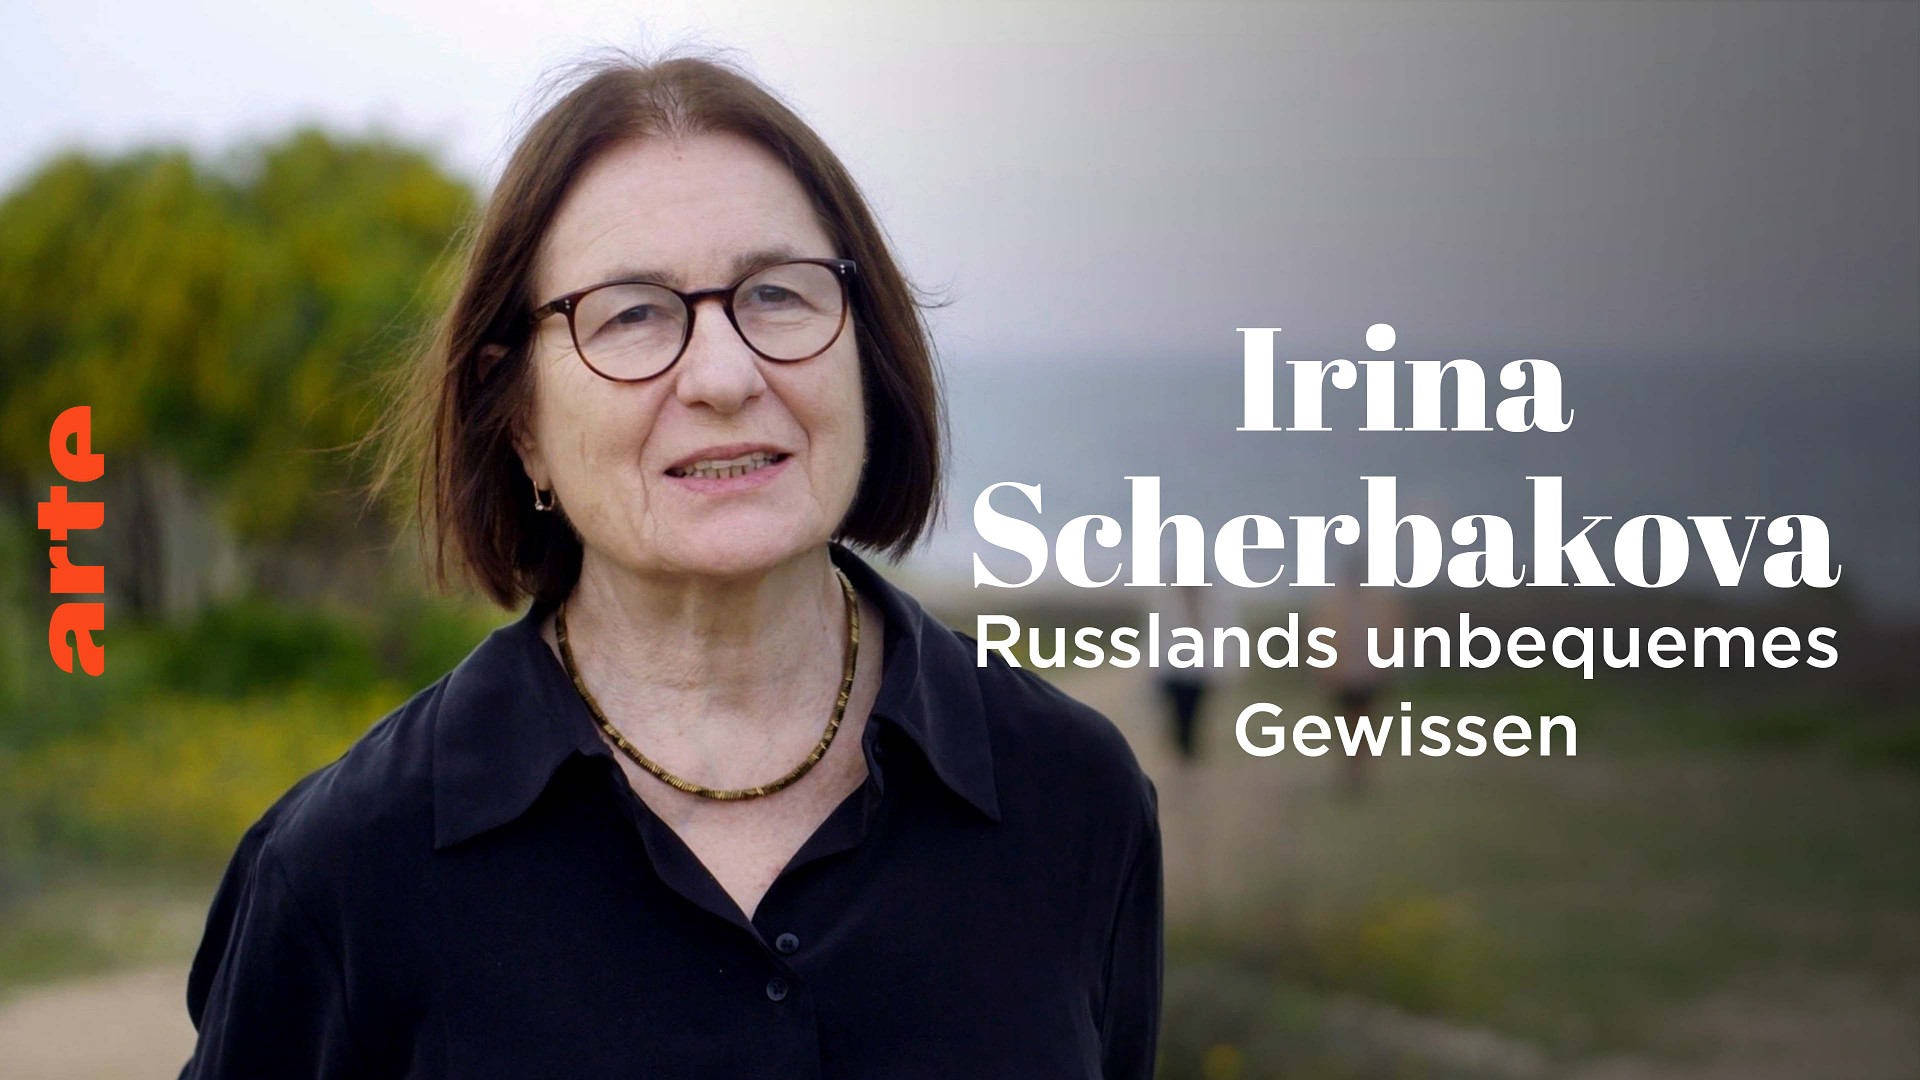 Irina Scherbakowa -Russlands unbequemes Gewissen